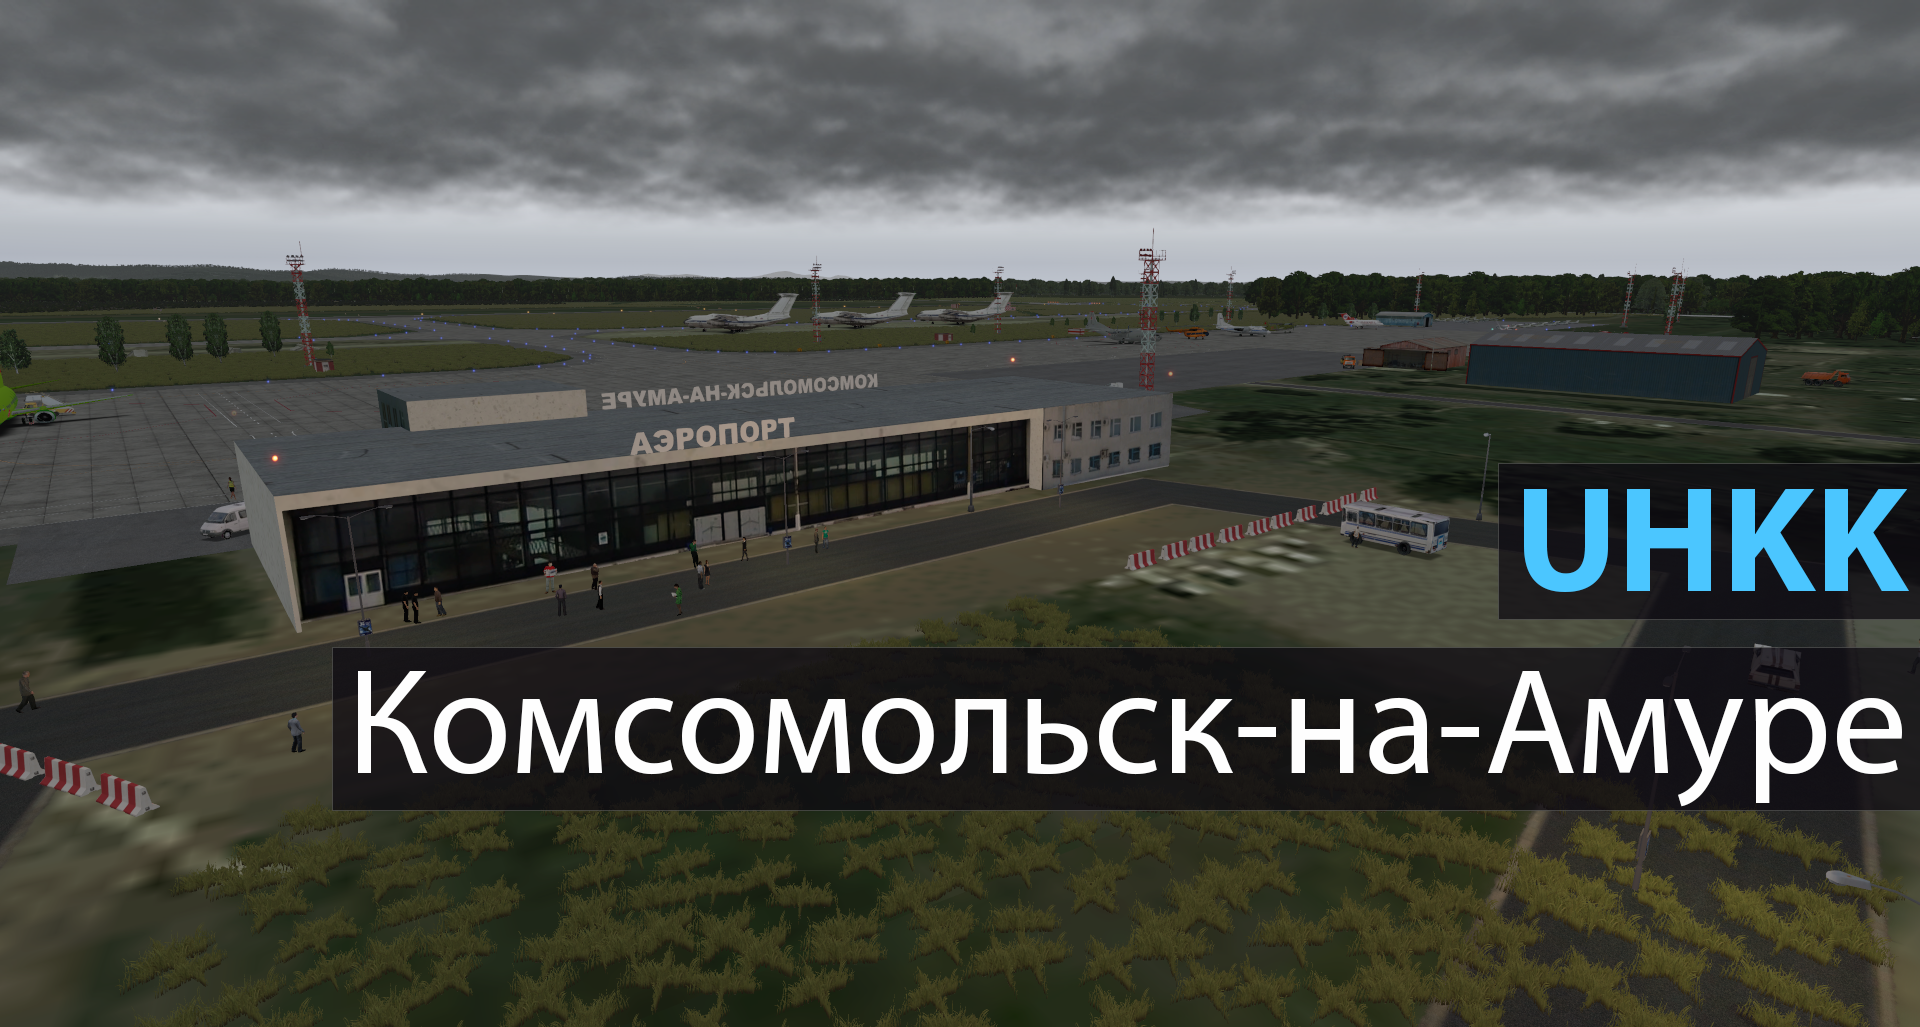 Аэропорт в комсомольске-на-амуре (хурба): назначение и направления перелетов, основные и дополнительные услуги, цены на них